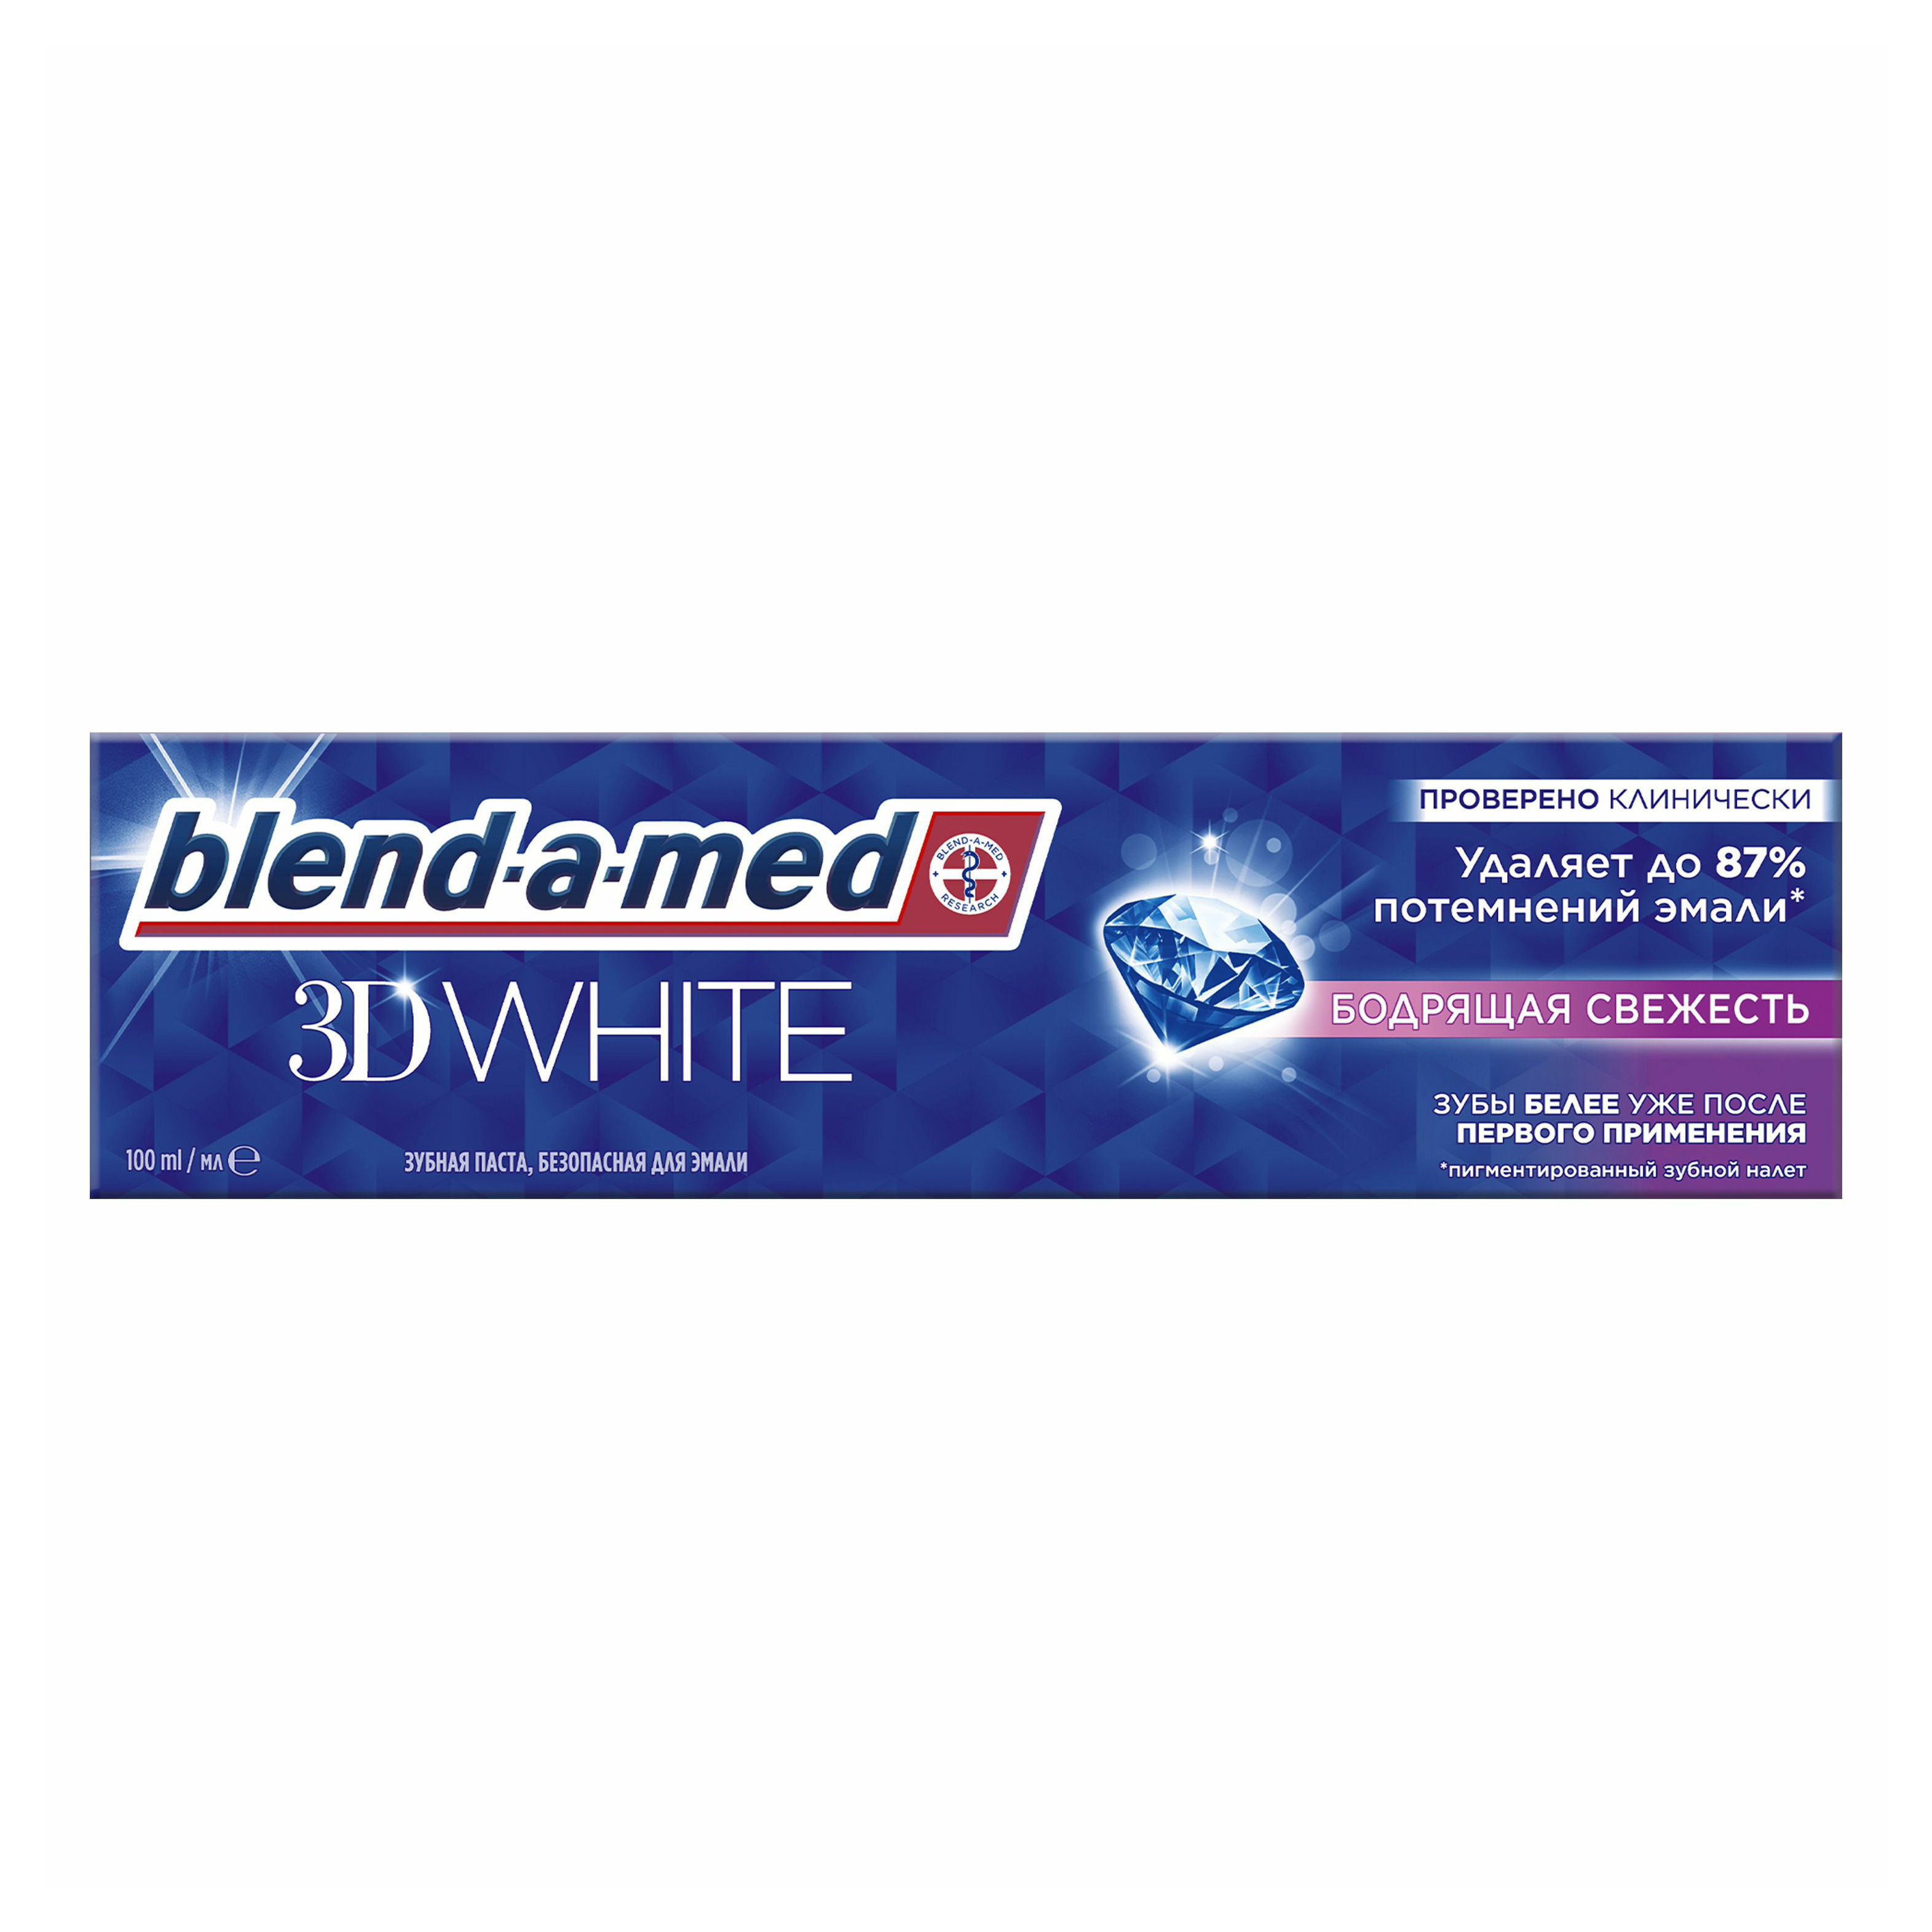 Зубная паста Blend-a-med 3D White Бодрящая свежесть для безопасного отбеливания 100 мл